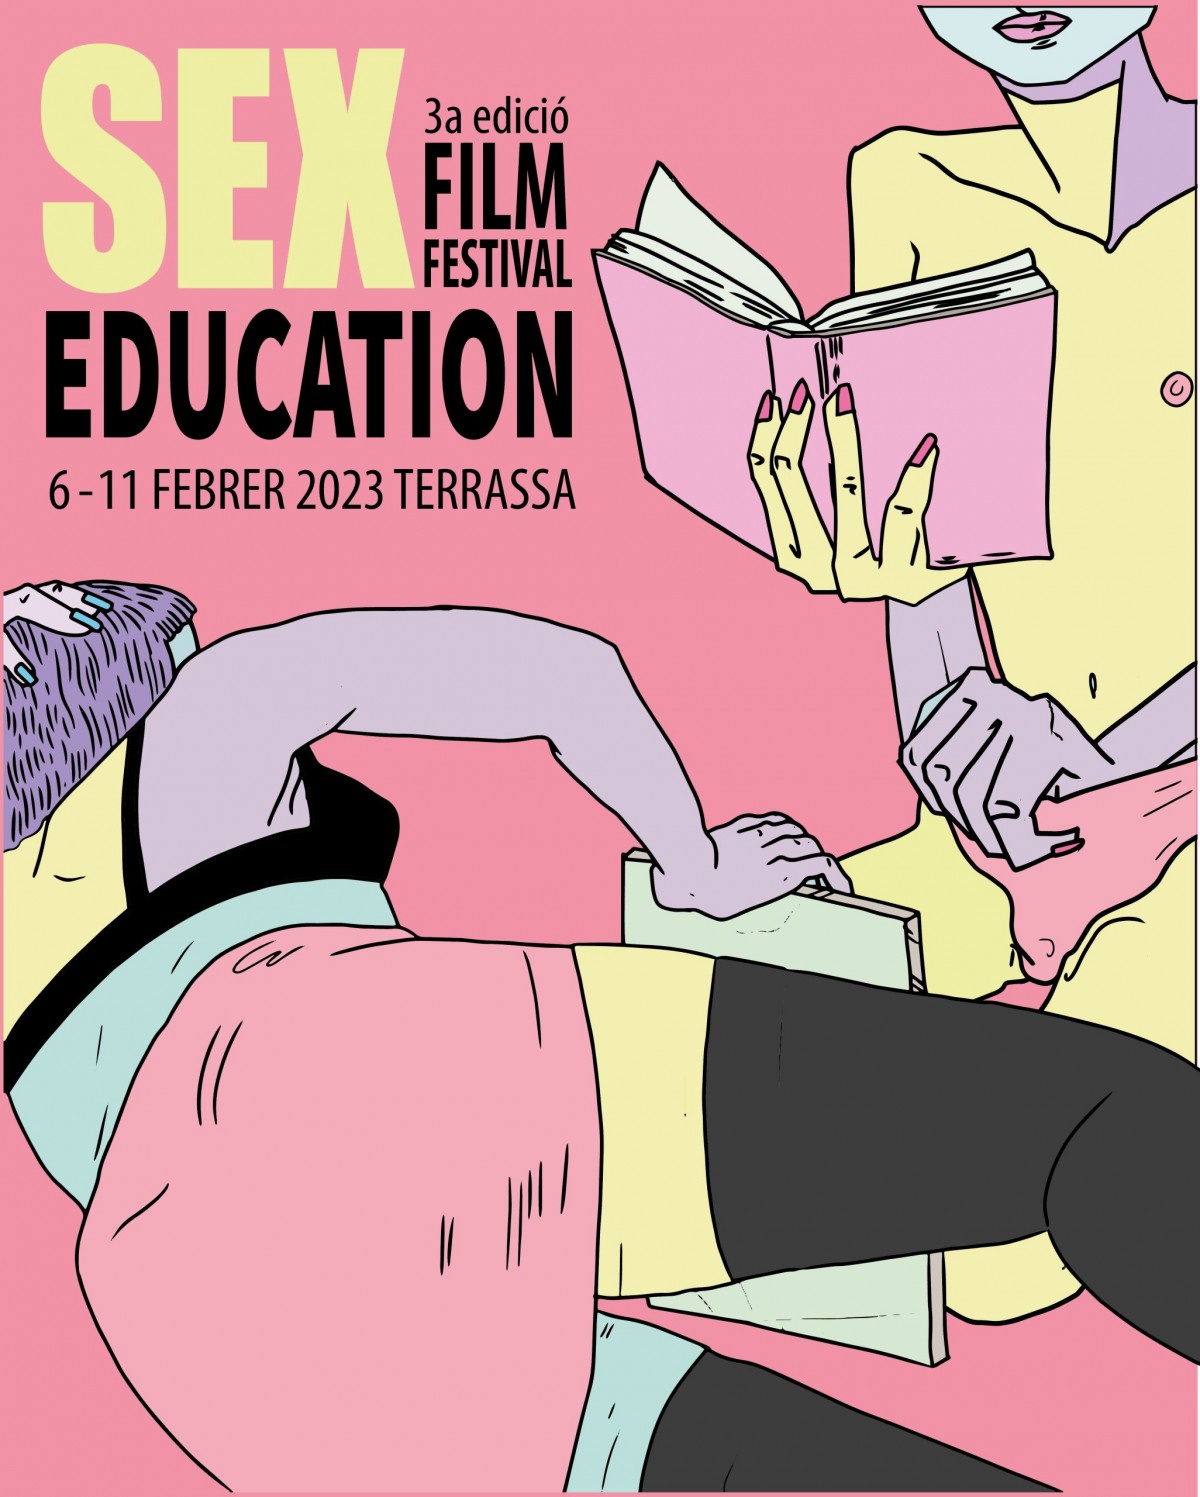 El cartell de la tercera edició del Sex Education Film Festival 